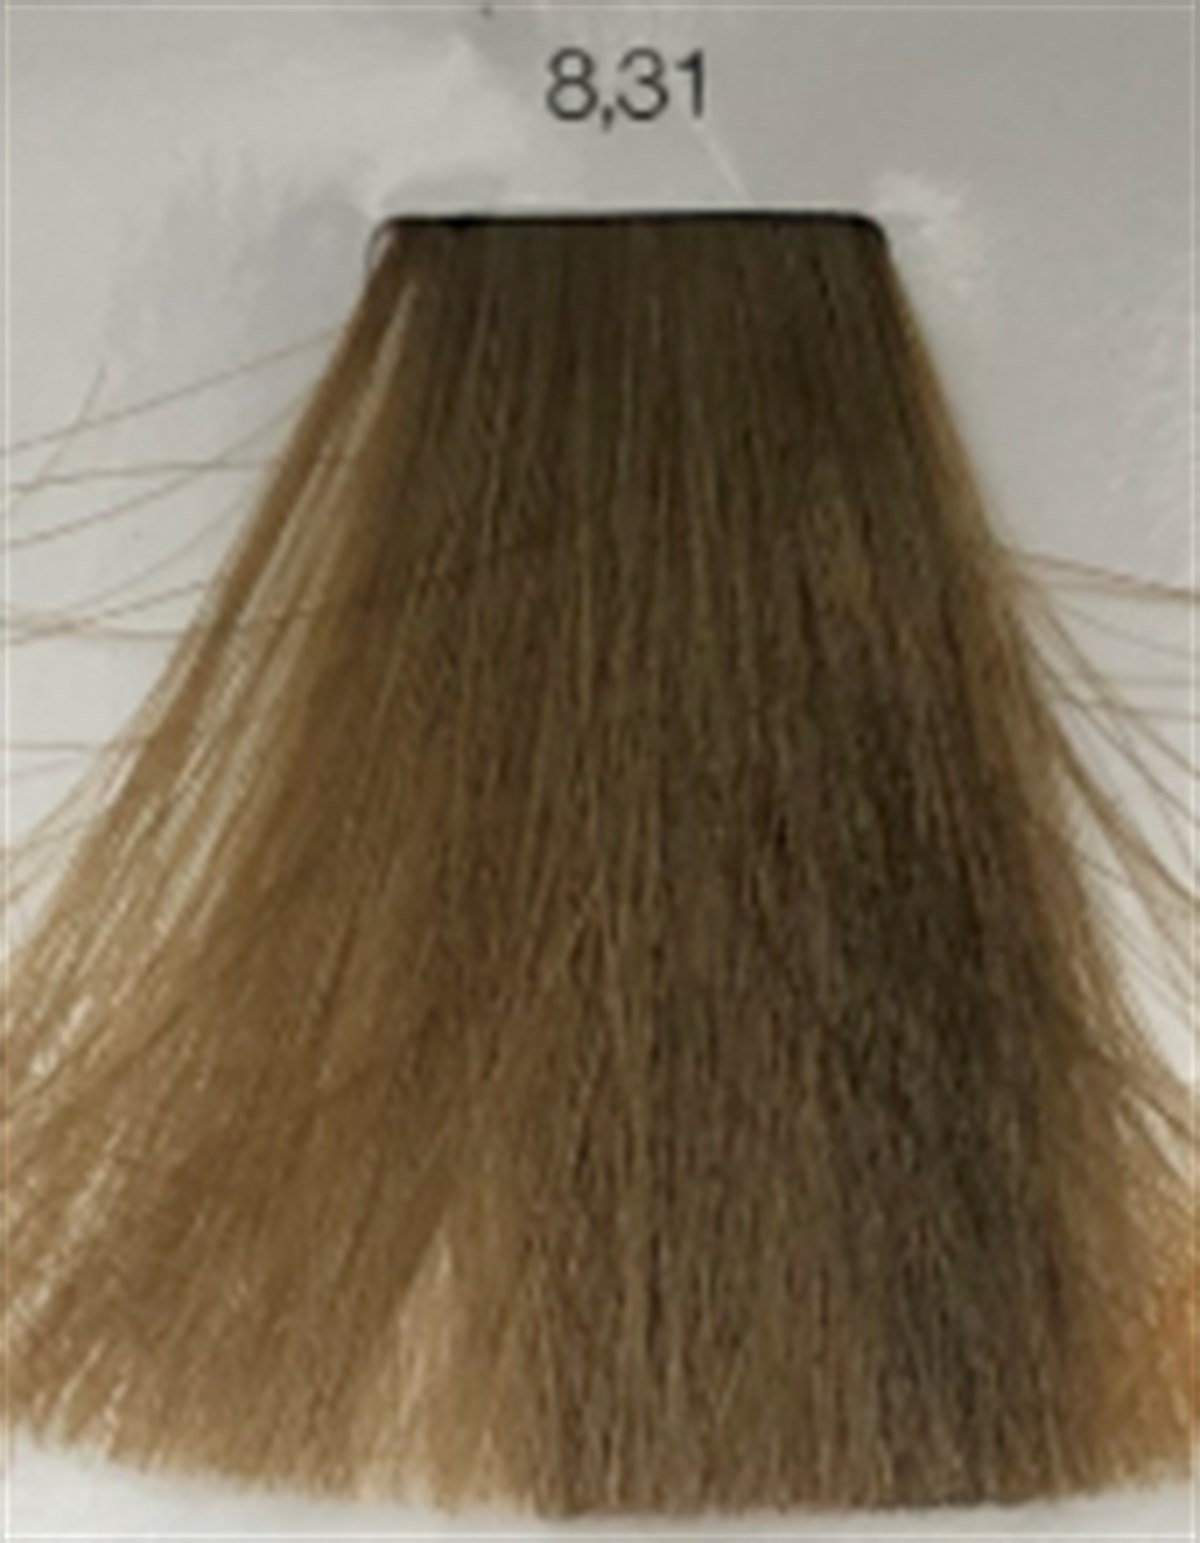 inoa saç boyası 8.31İNOA SAÇ BOYASI-www.arzumkozmetik.com